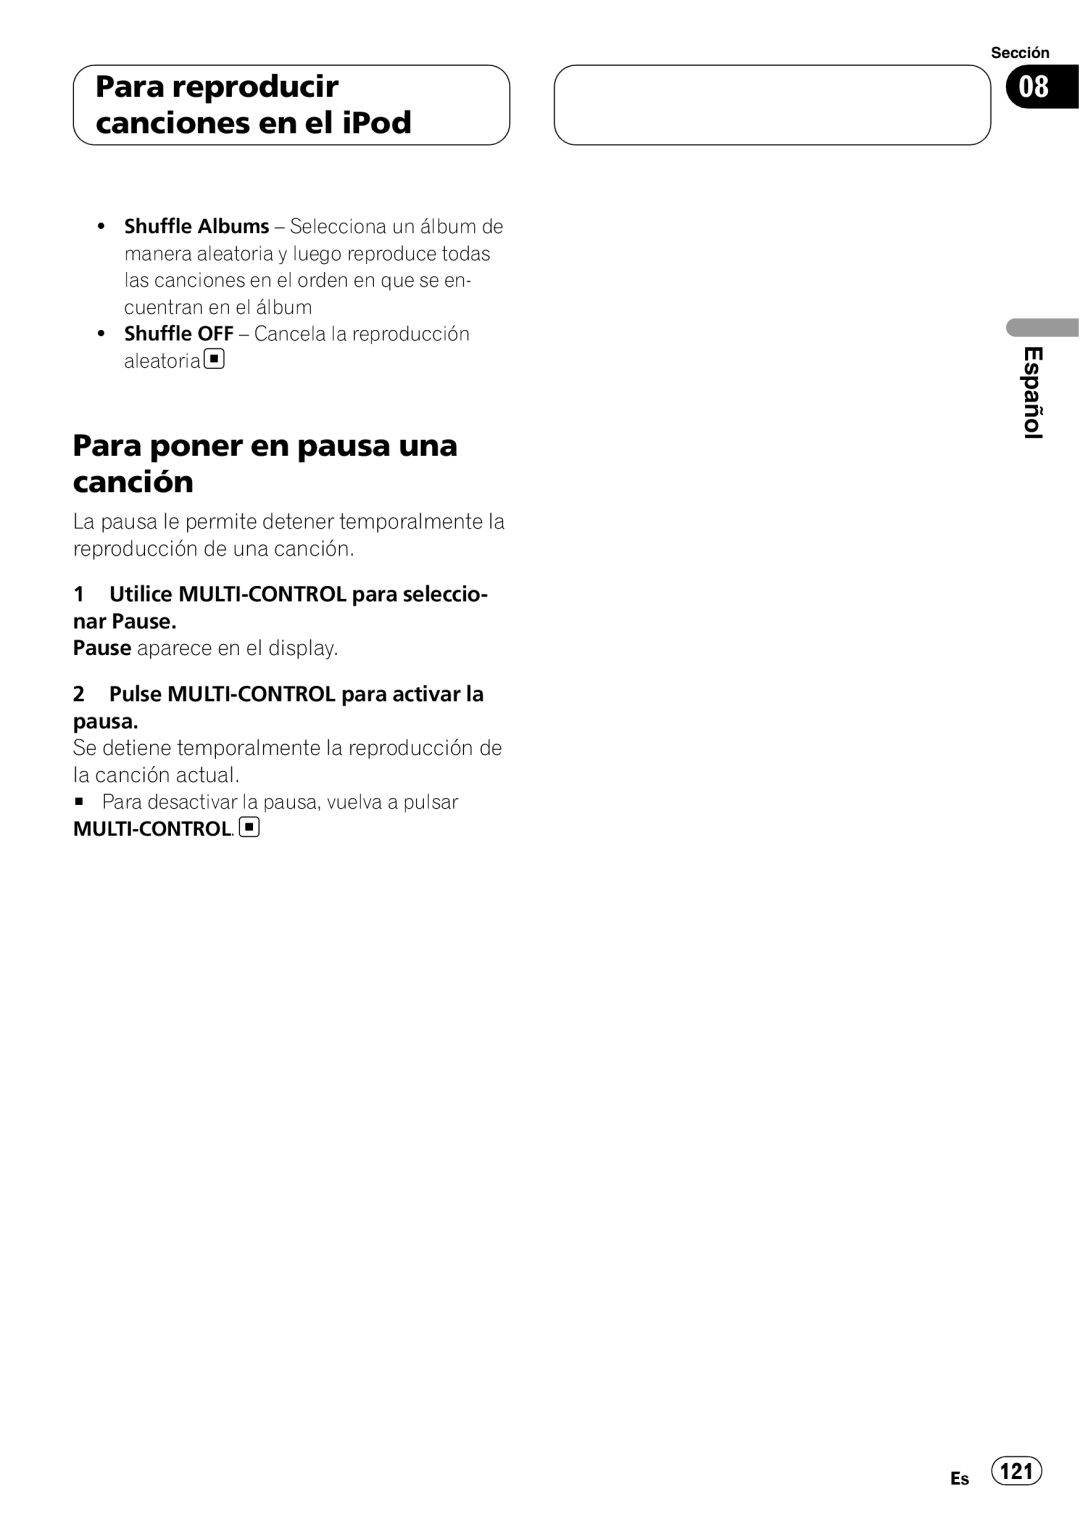 Pioneer DEH-P80RS operation manual Para poner en pausa una canción, Para reproducir canciones en el iPod, Español 